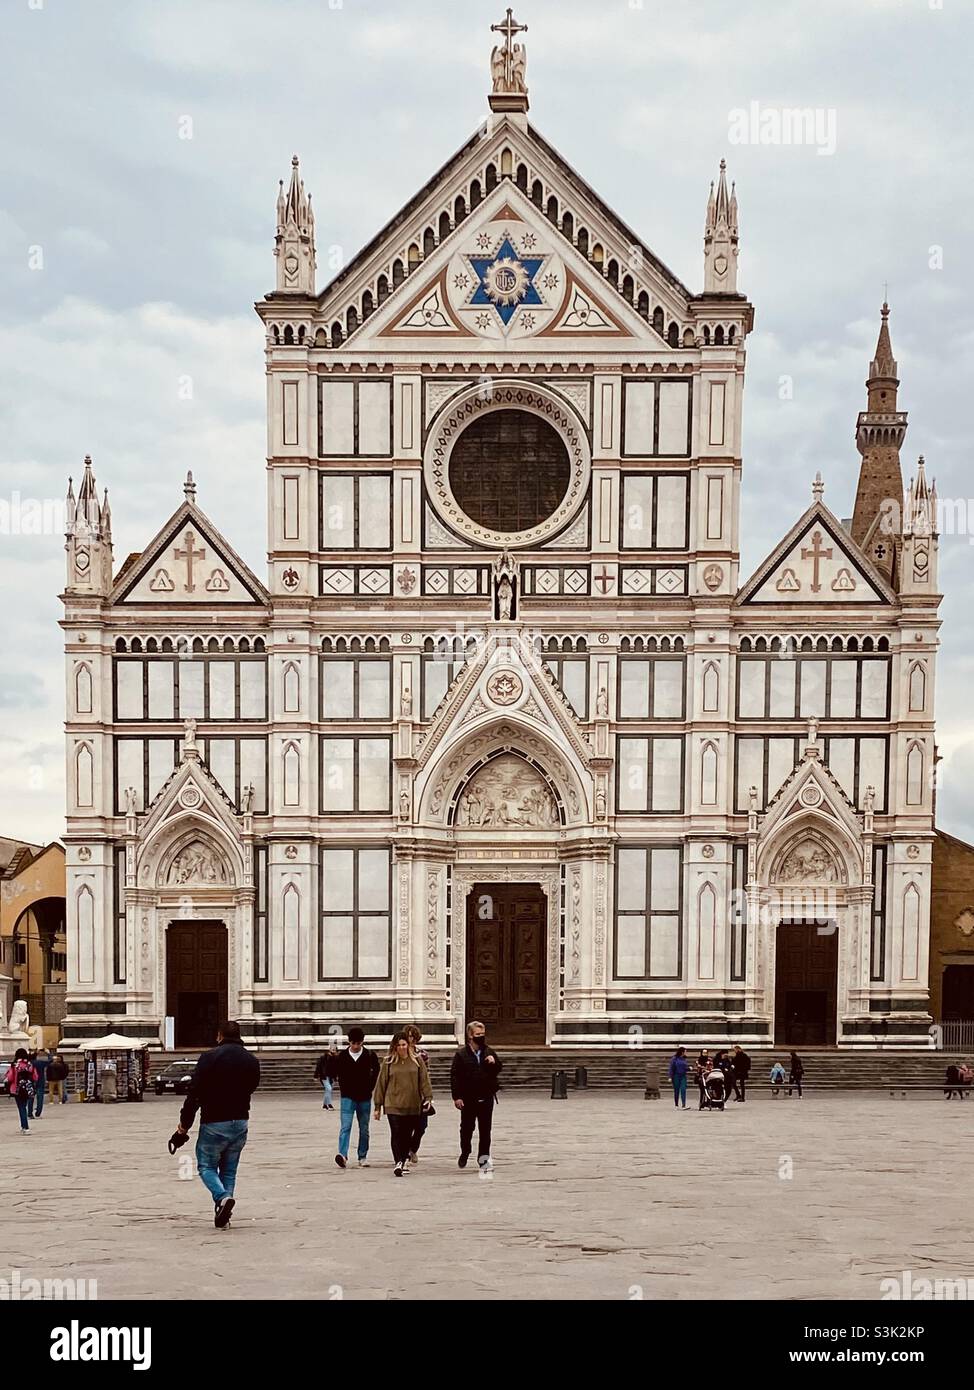 Die Basilica di Santa Croce (italienisch für die Basilika des Heiligen Kreuzes'). Es liegt an der Piazza Santa Croce in Florenz. Es ist die Begräbnisstätte einiger der berühmtesten Italiener. Stockfoto